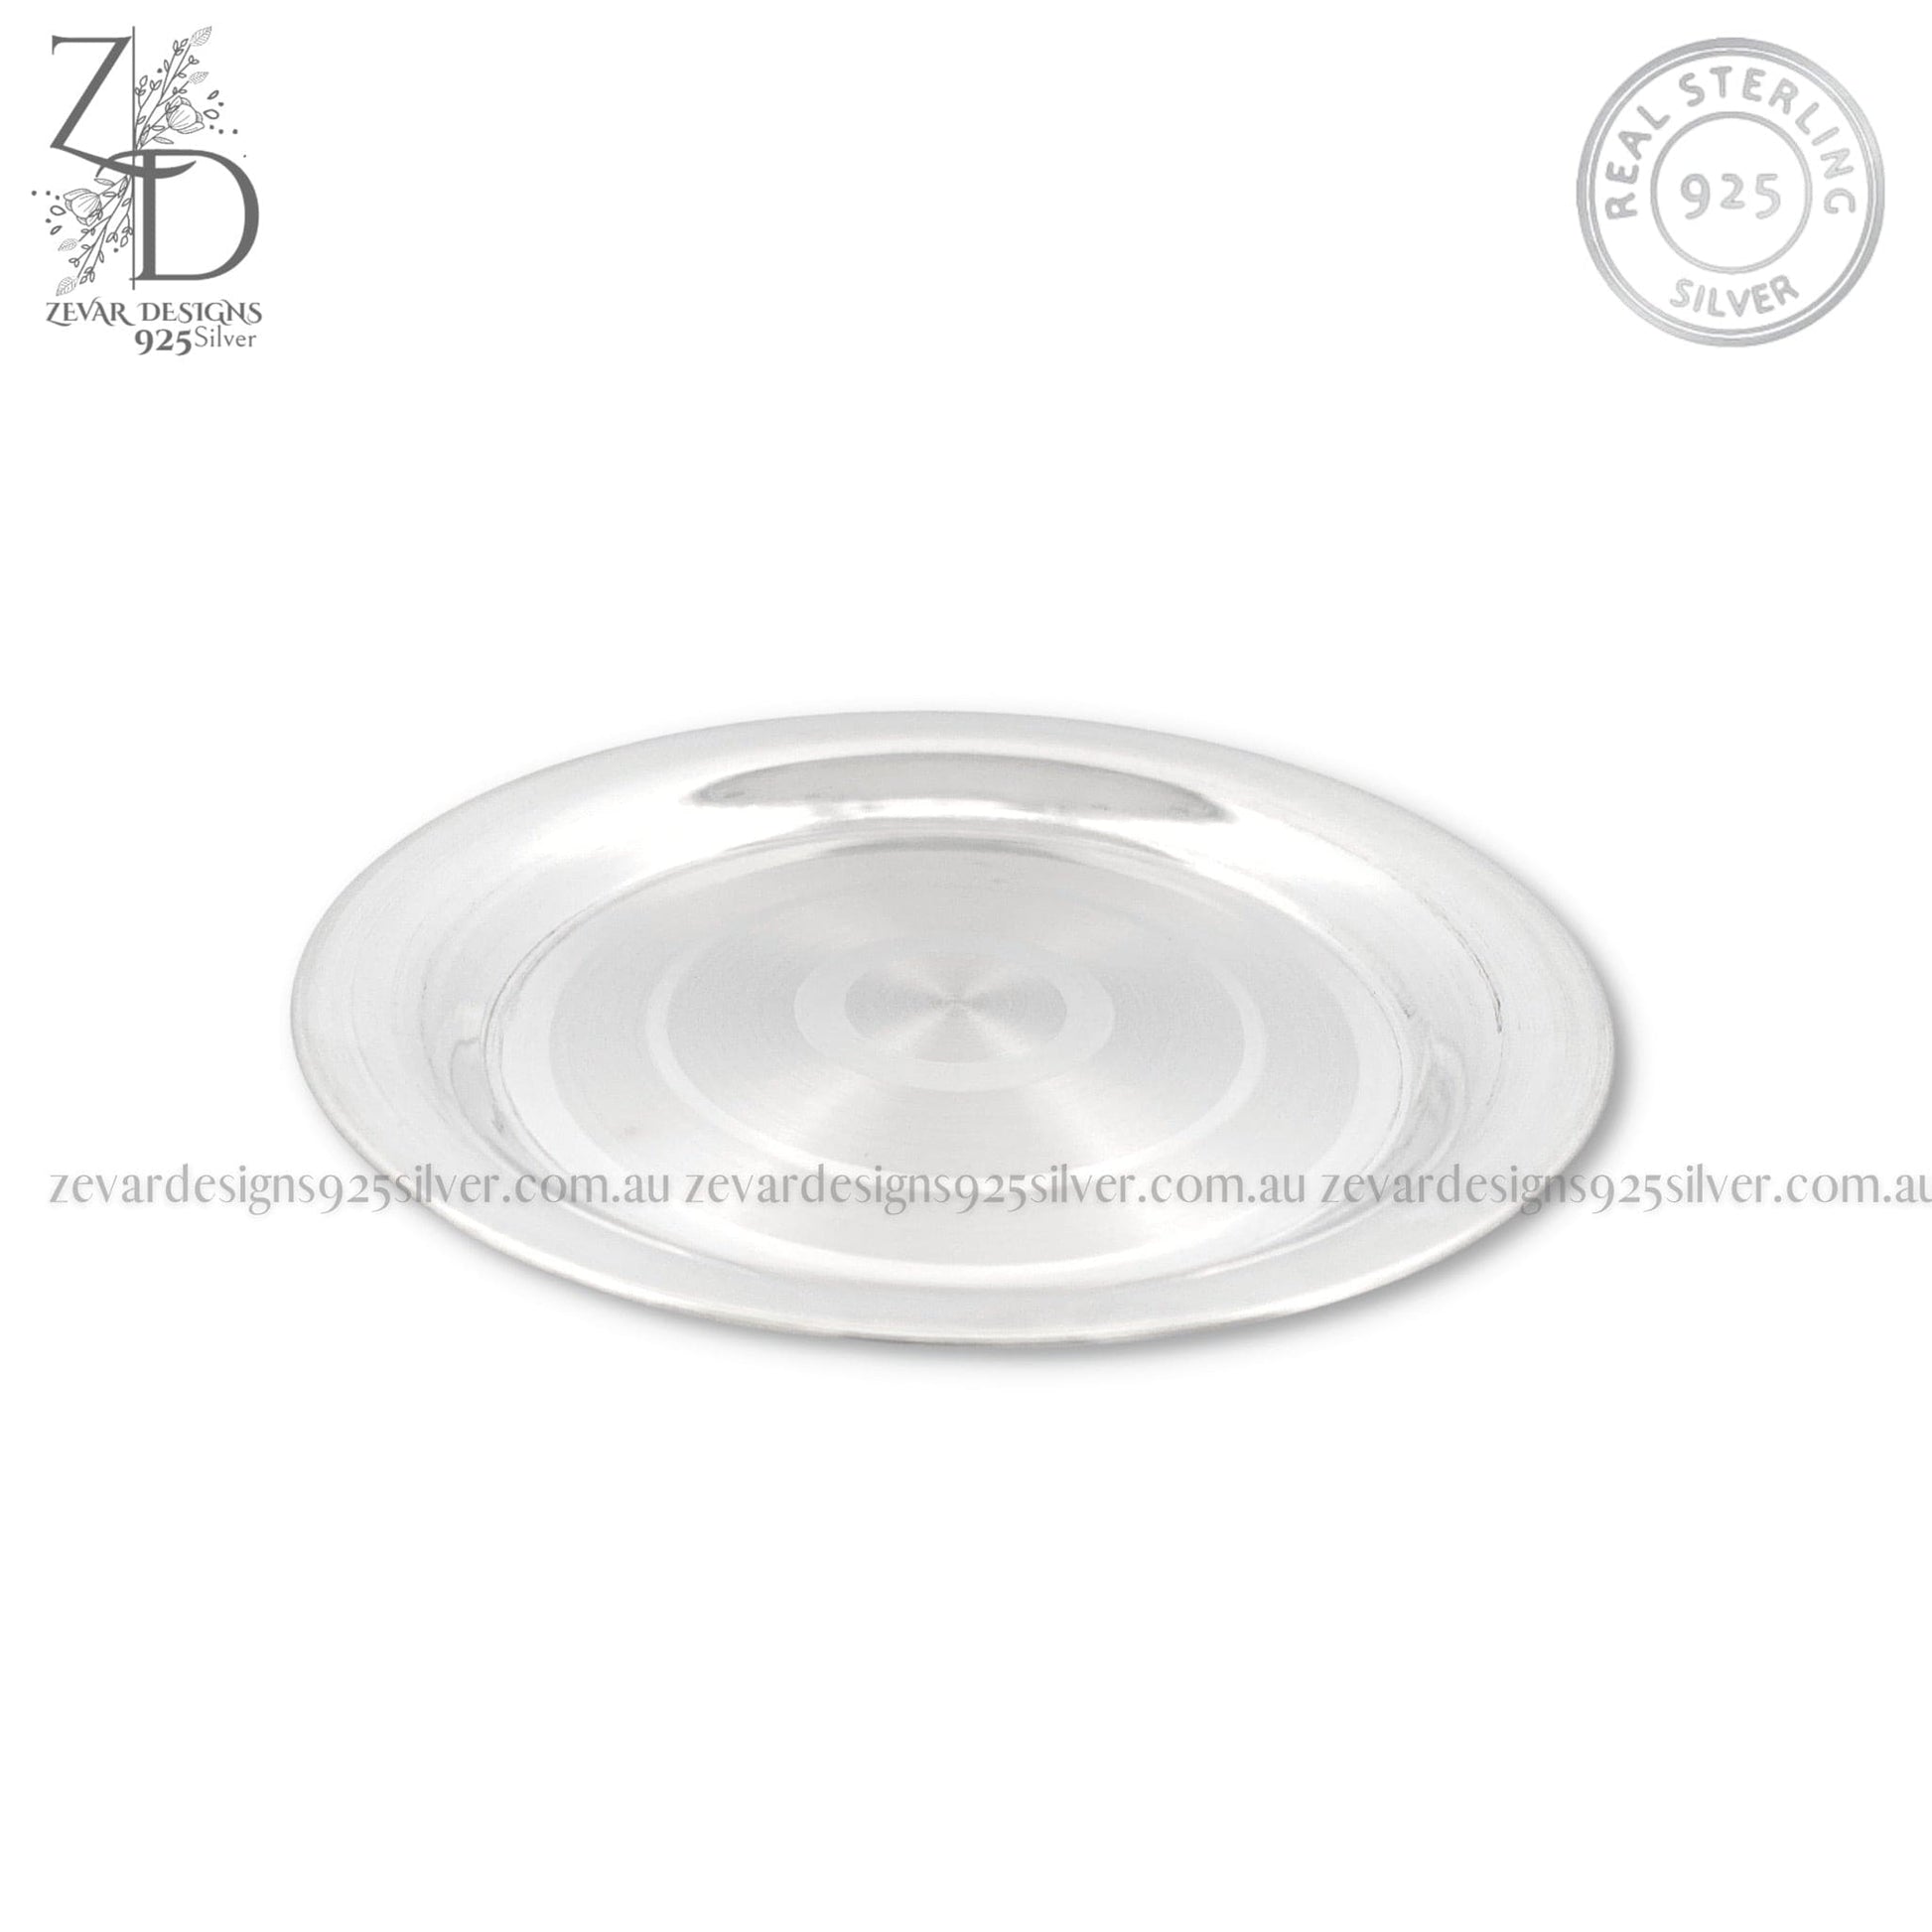 Zevar Designs 925 Silver utensil Silver Plate 12cms